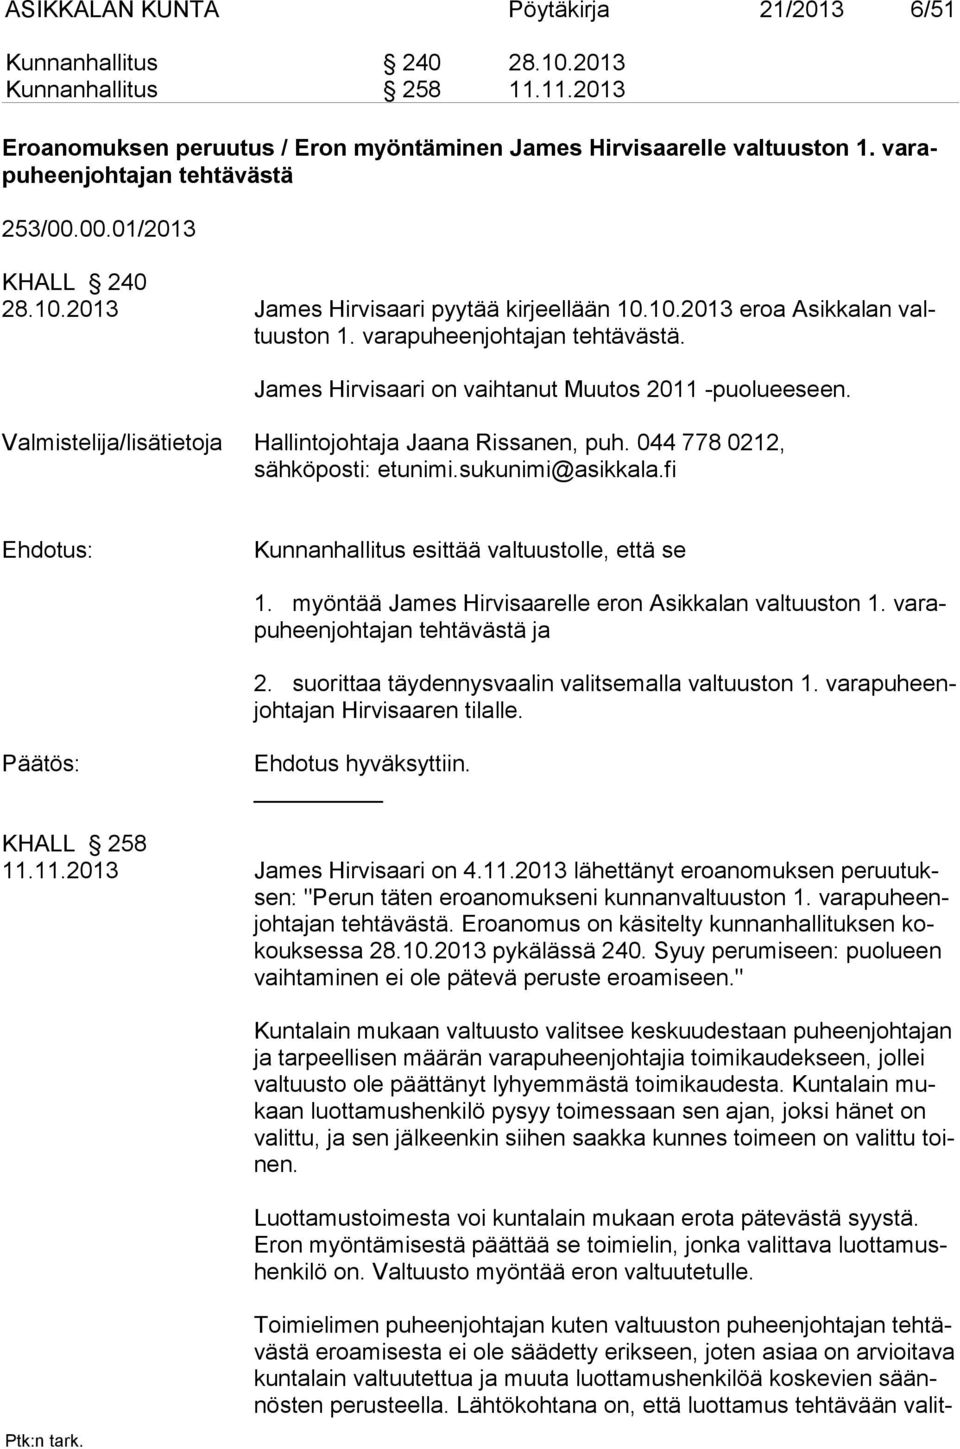 James Hirvisaari on vaihtanut Muutos 2011 -puolueeseen. Valmistelija/lisätietoja Hallintojohtaja Jaana Rissanen, puh. 044 778 0212, sähköposti: etunimi.sukunimi@asikkala.